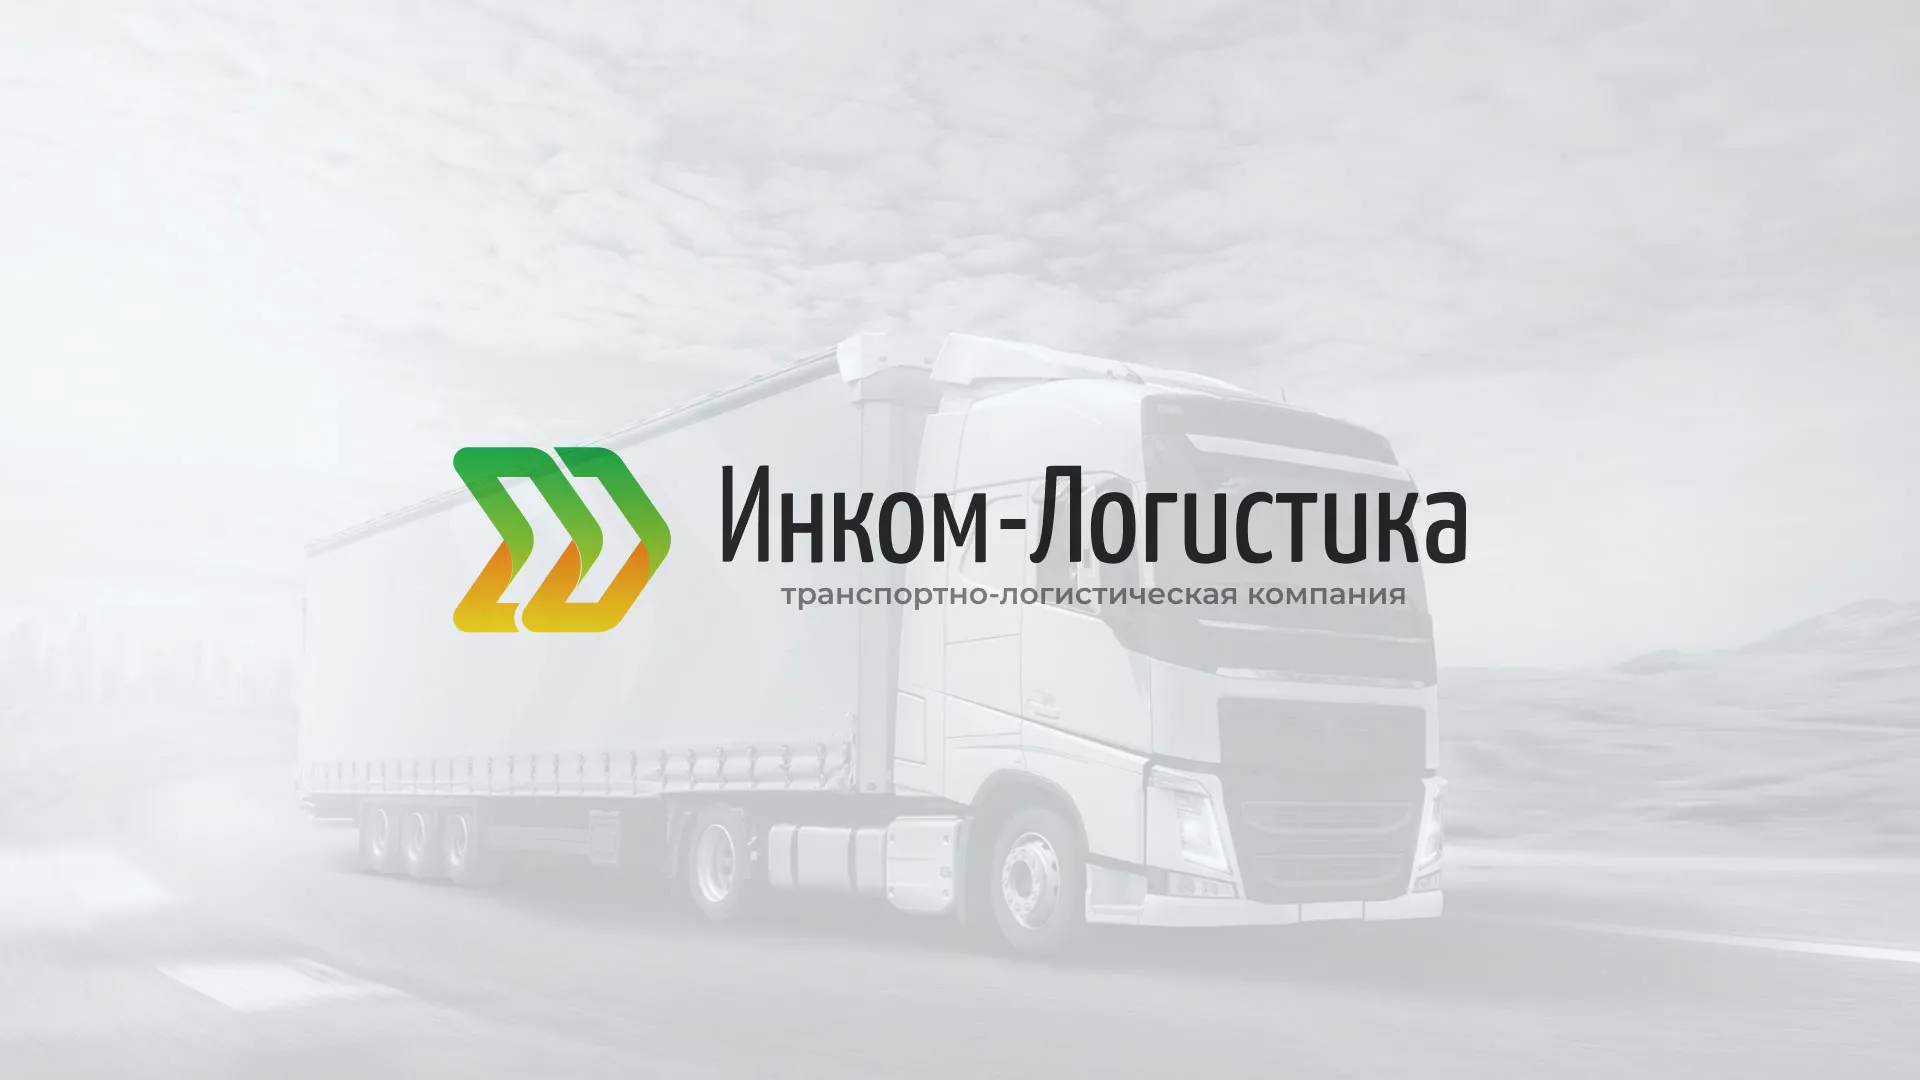 Разработка логотипа и сайта компании «Инком-Логистика» в Камешково